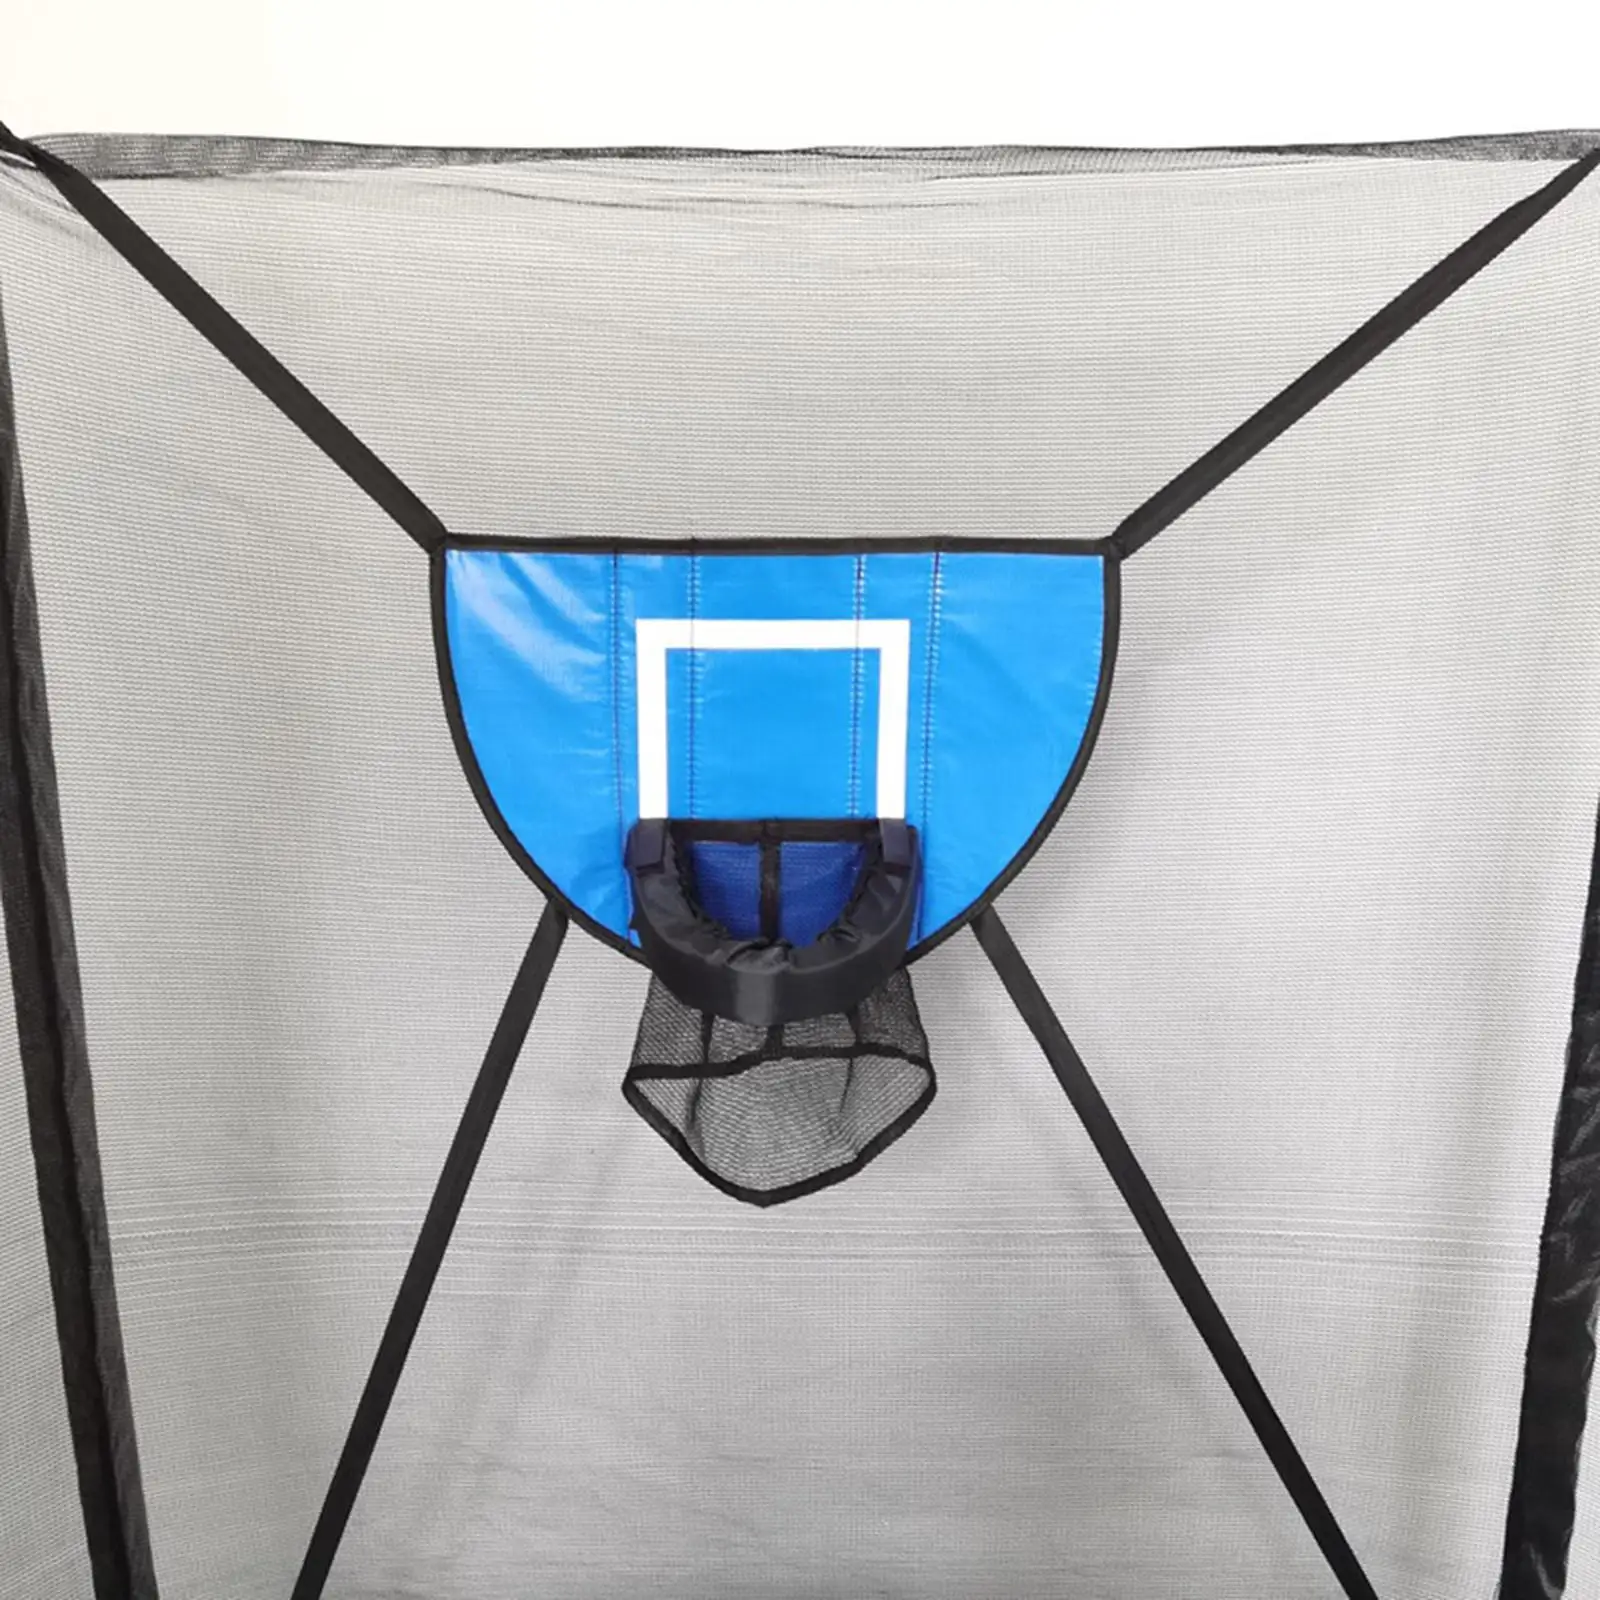 Mini Trampoline Basketball Hoop Waterproof Sunscreen Materials Basketball Frame